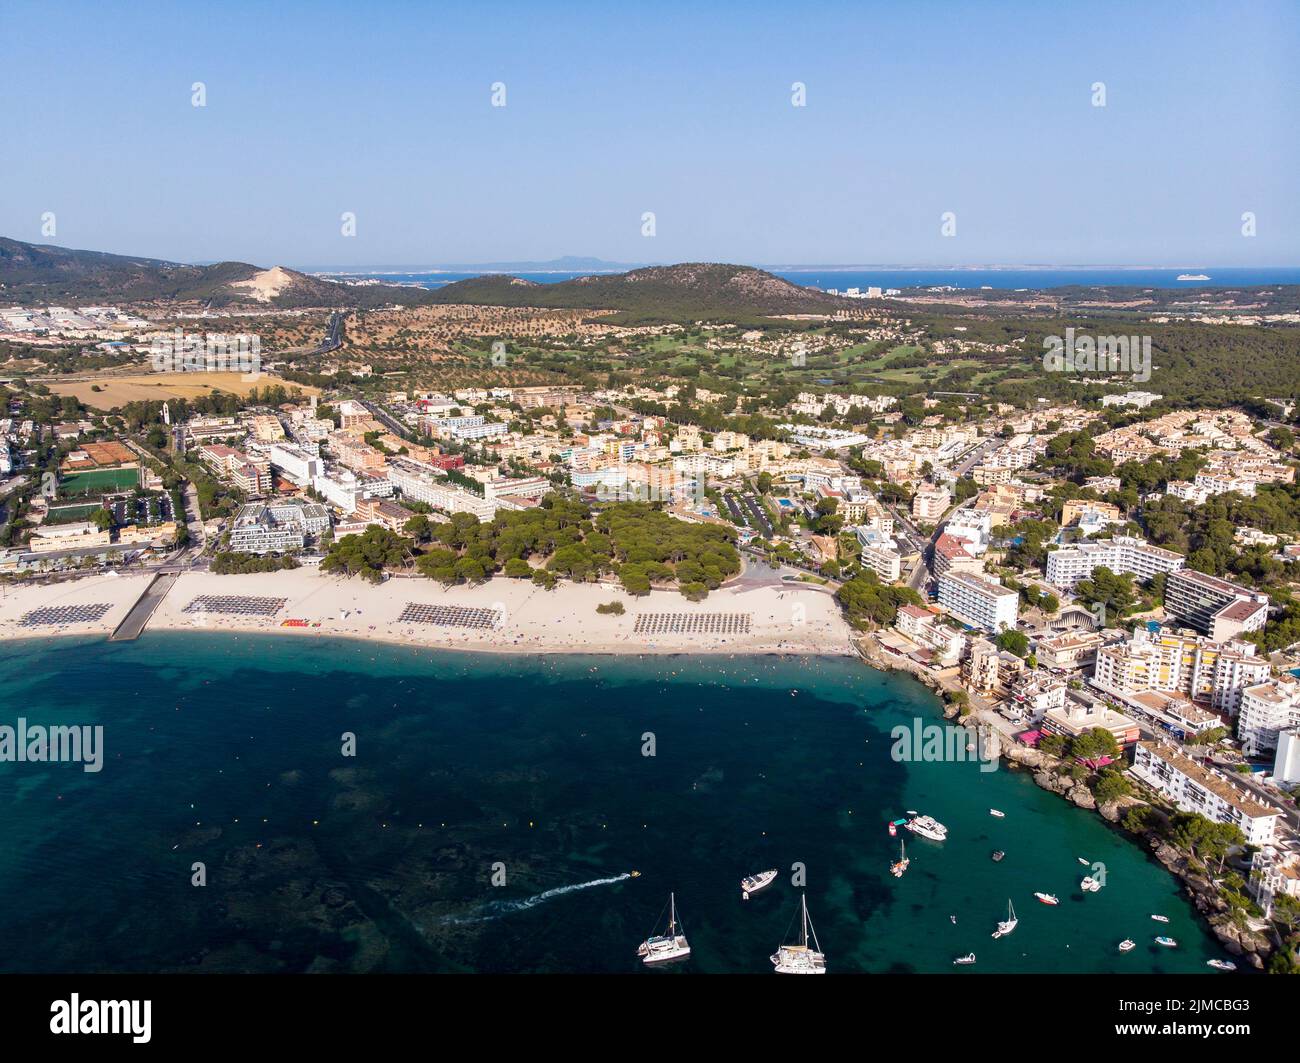 Vista aerea, vista di Santa Ponca e del porto turistico, dietro la Serra de Tramuntana, Maiorca, Baleari Foto Stock